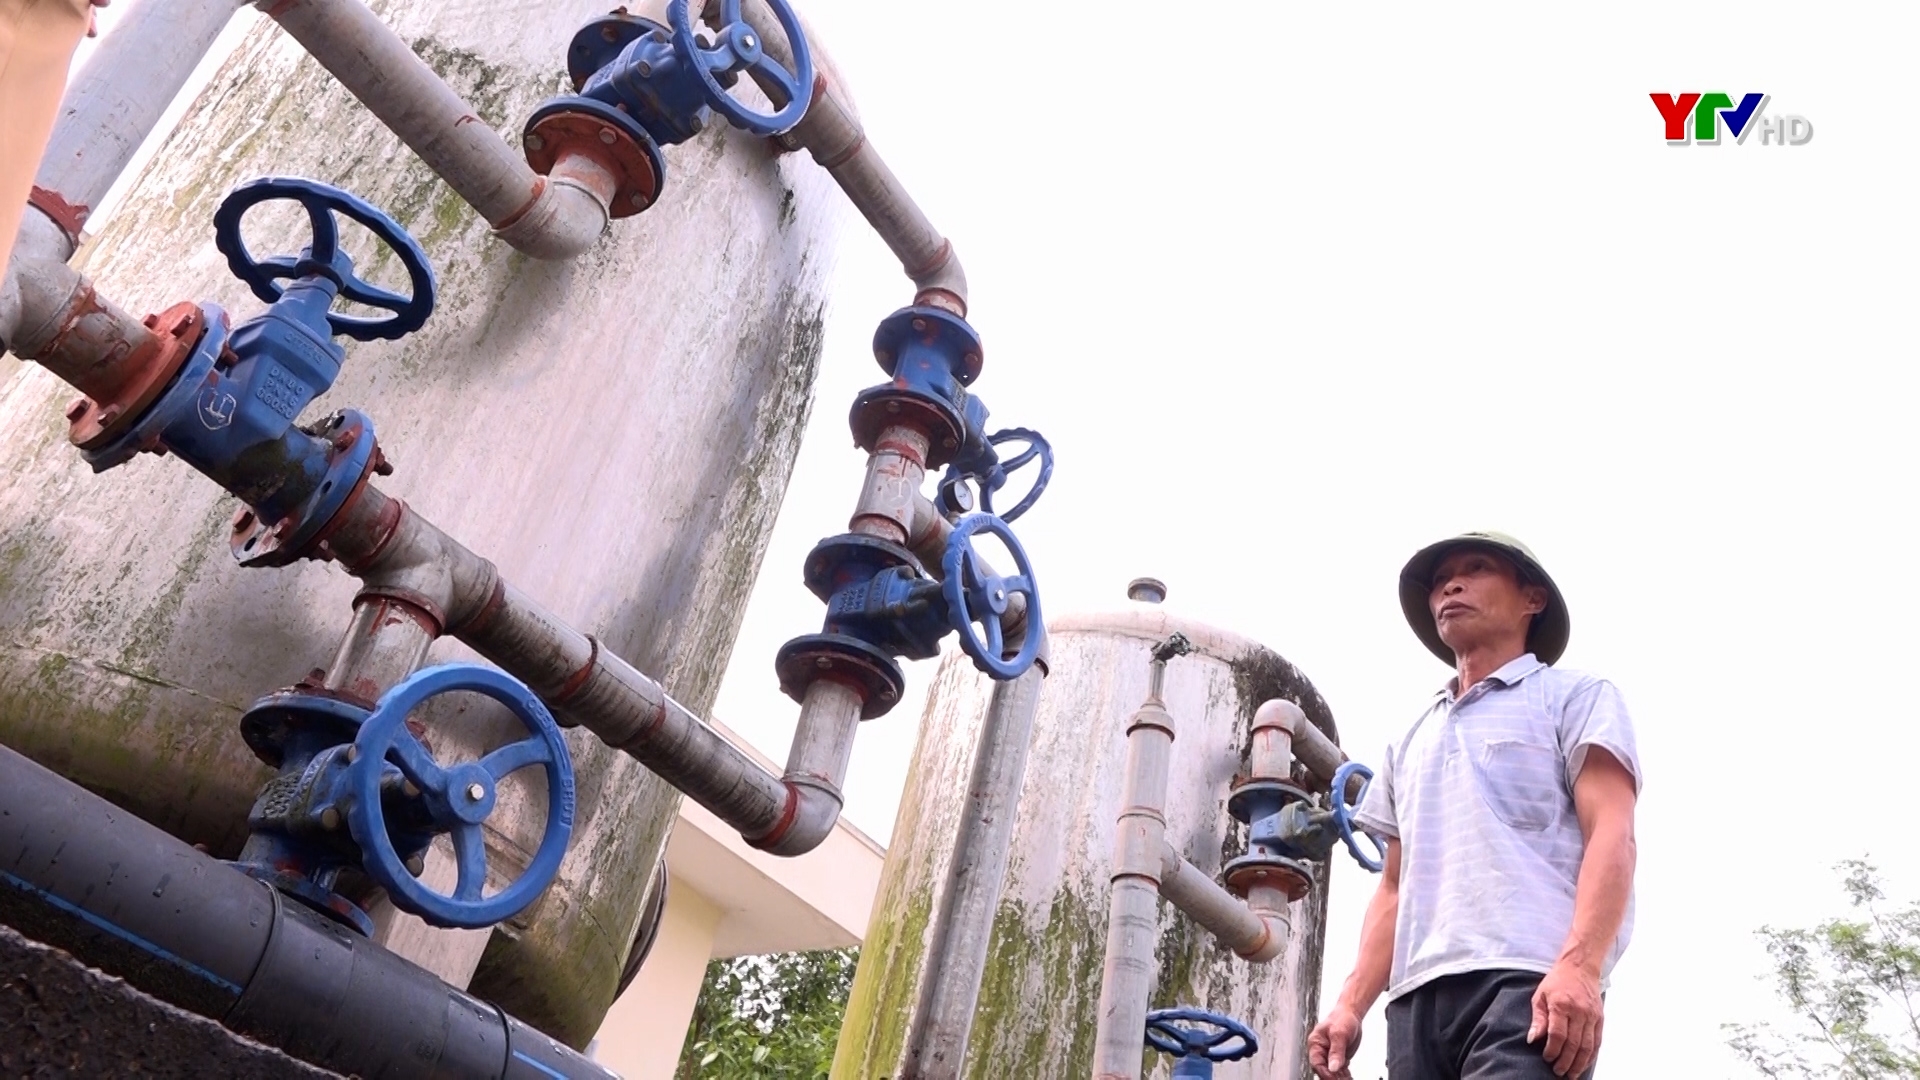 Hiệu quả chương trình nước sạch và vệ sinh môi trường nông thôn tại Yên Bái